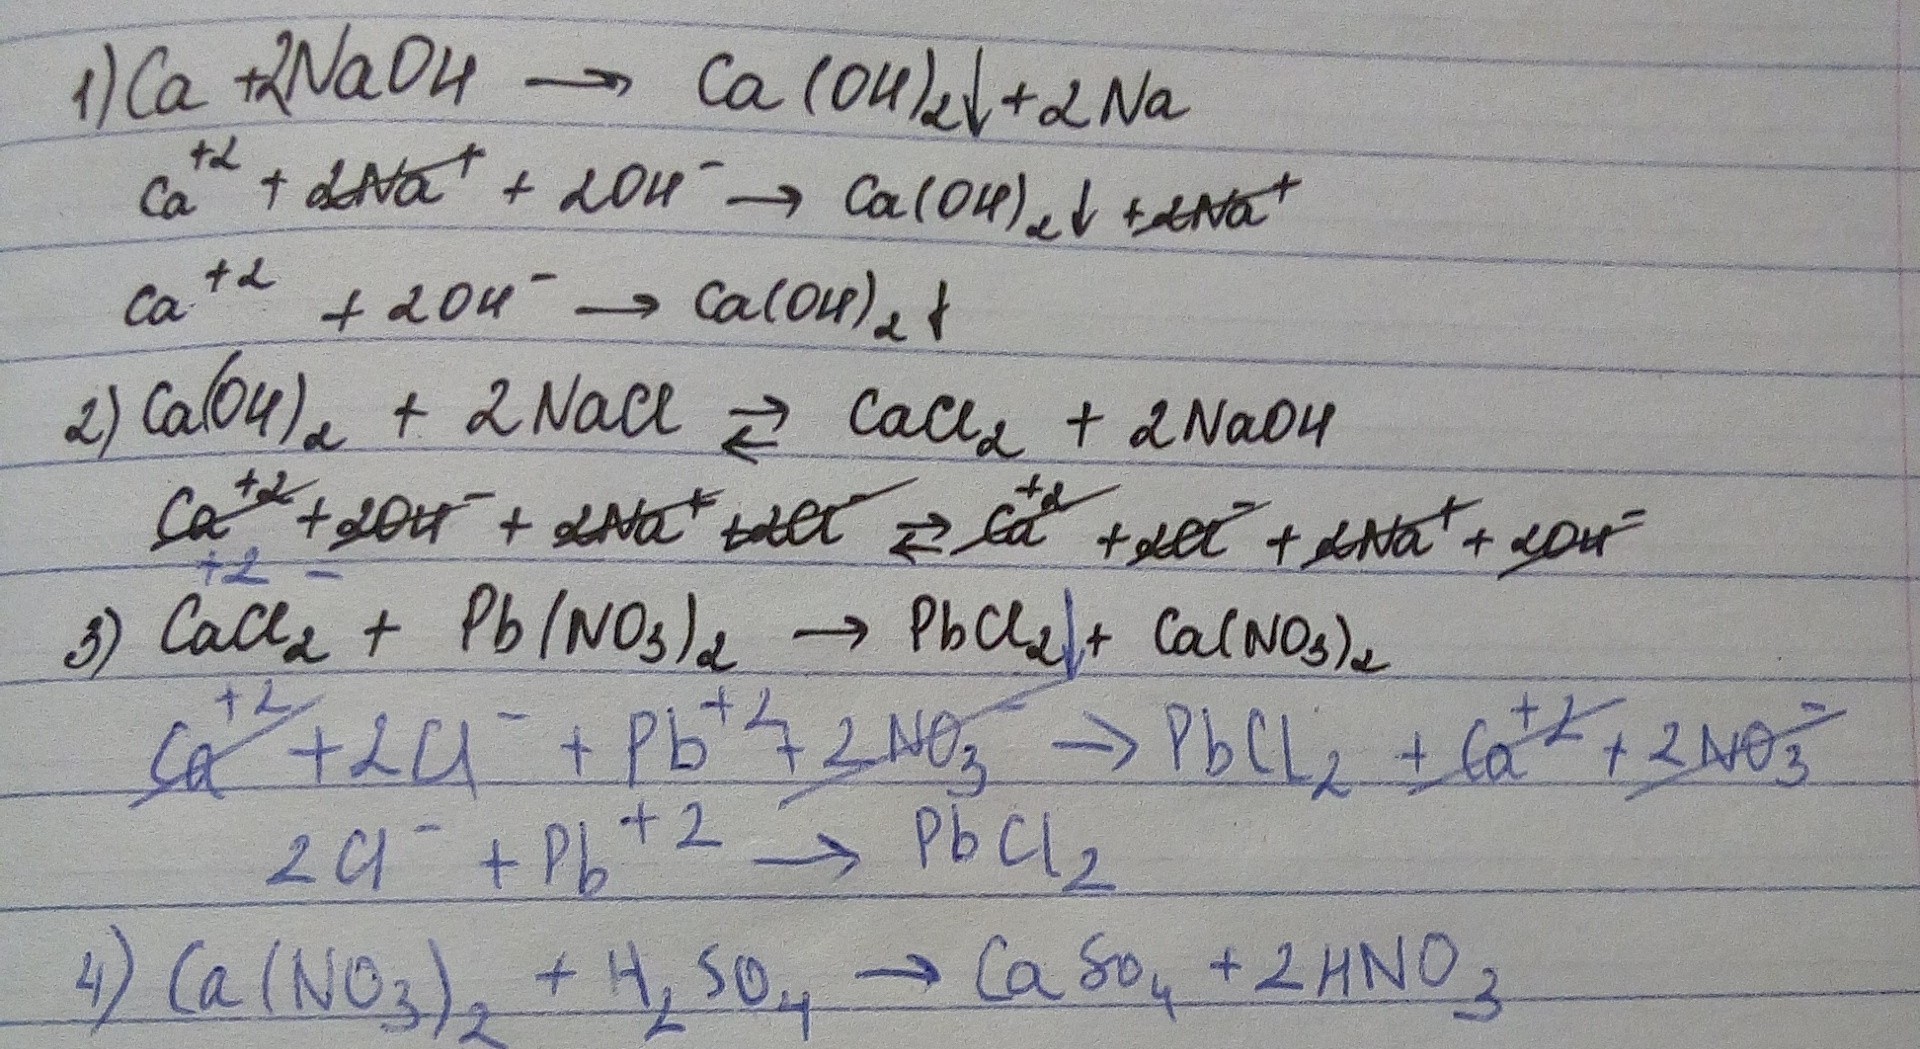 Ca no3 2 caso4 уравнение реакции. Молекулярная и ионная форма уравнения реакции. Напишите уравнения реакций в молекулярной и ионной формах. Напишите уравнения реакции в молекулярных и ионных формах. CA Oh 2 ионное уравнение и молекулярное.